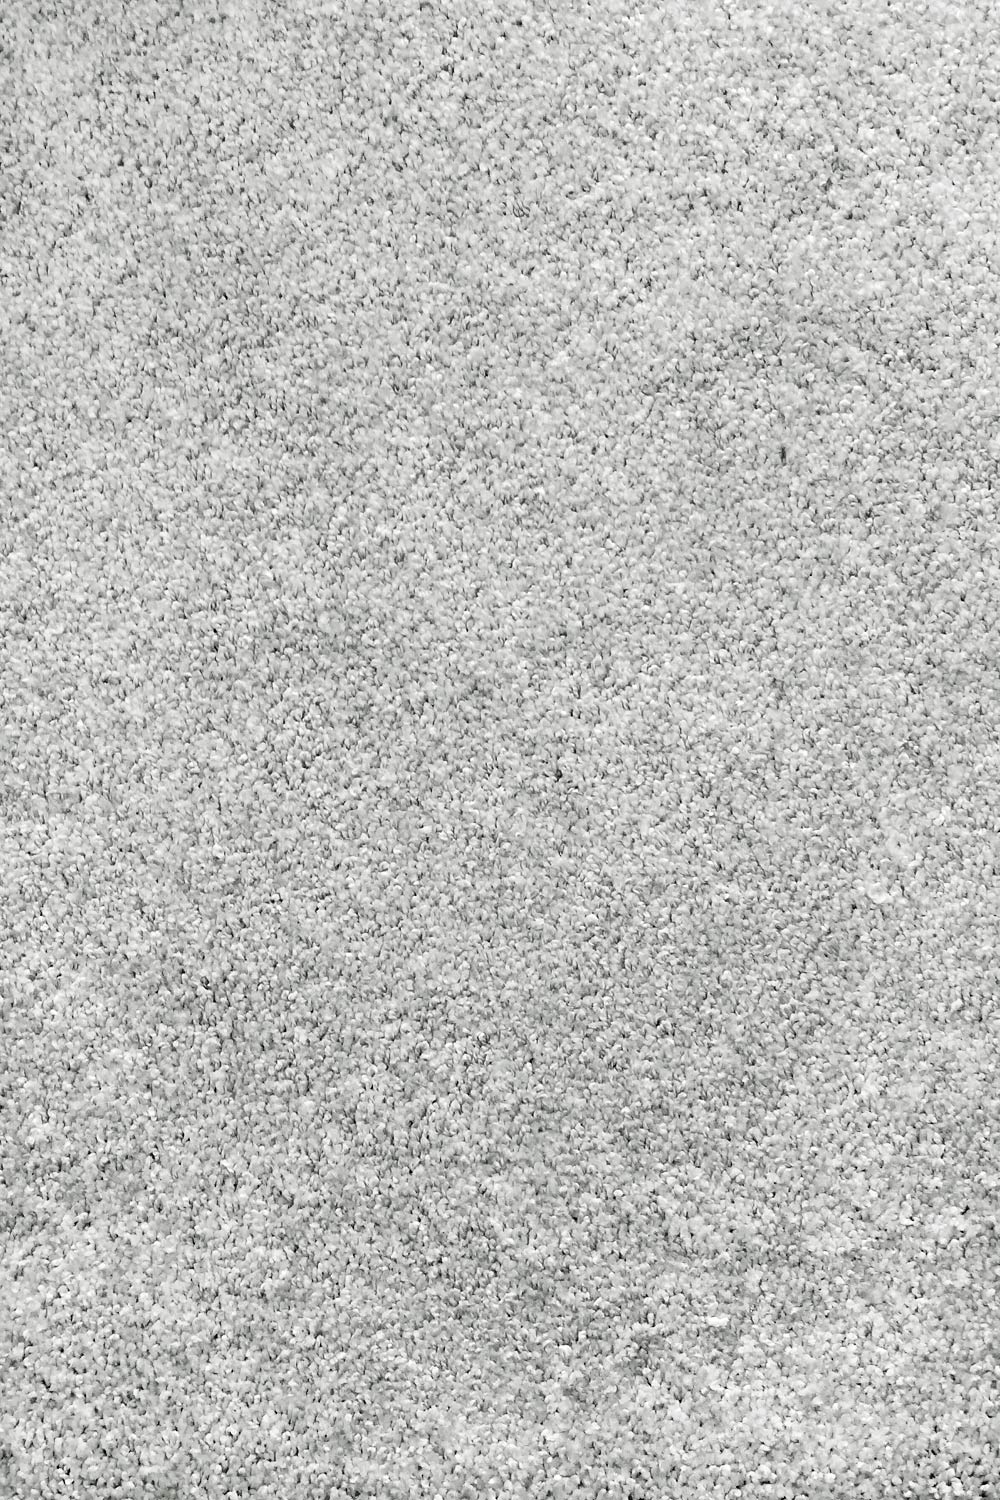 Metrážny koberec CAPRIOLO 90 500 cm